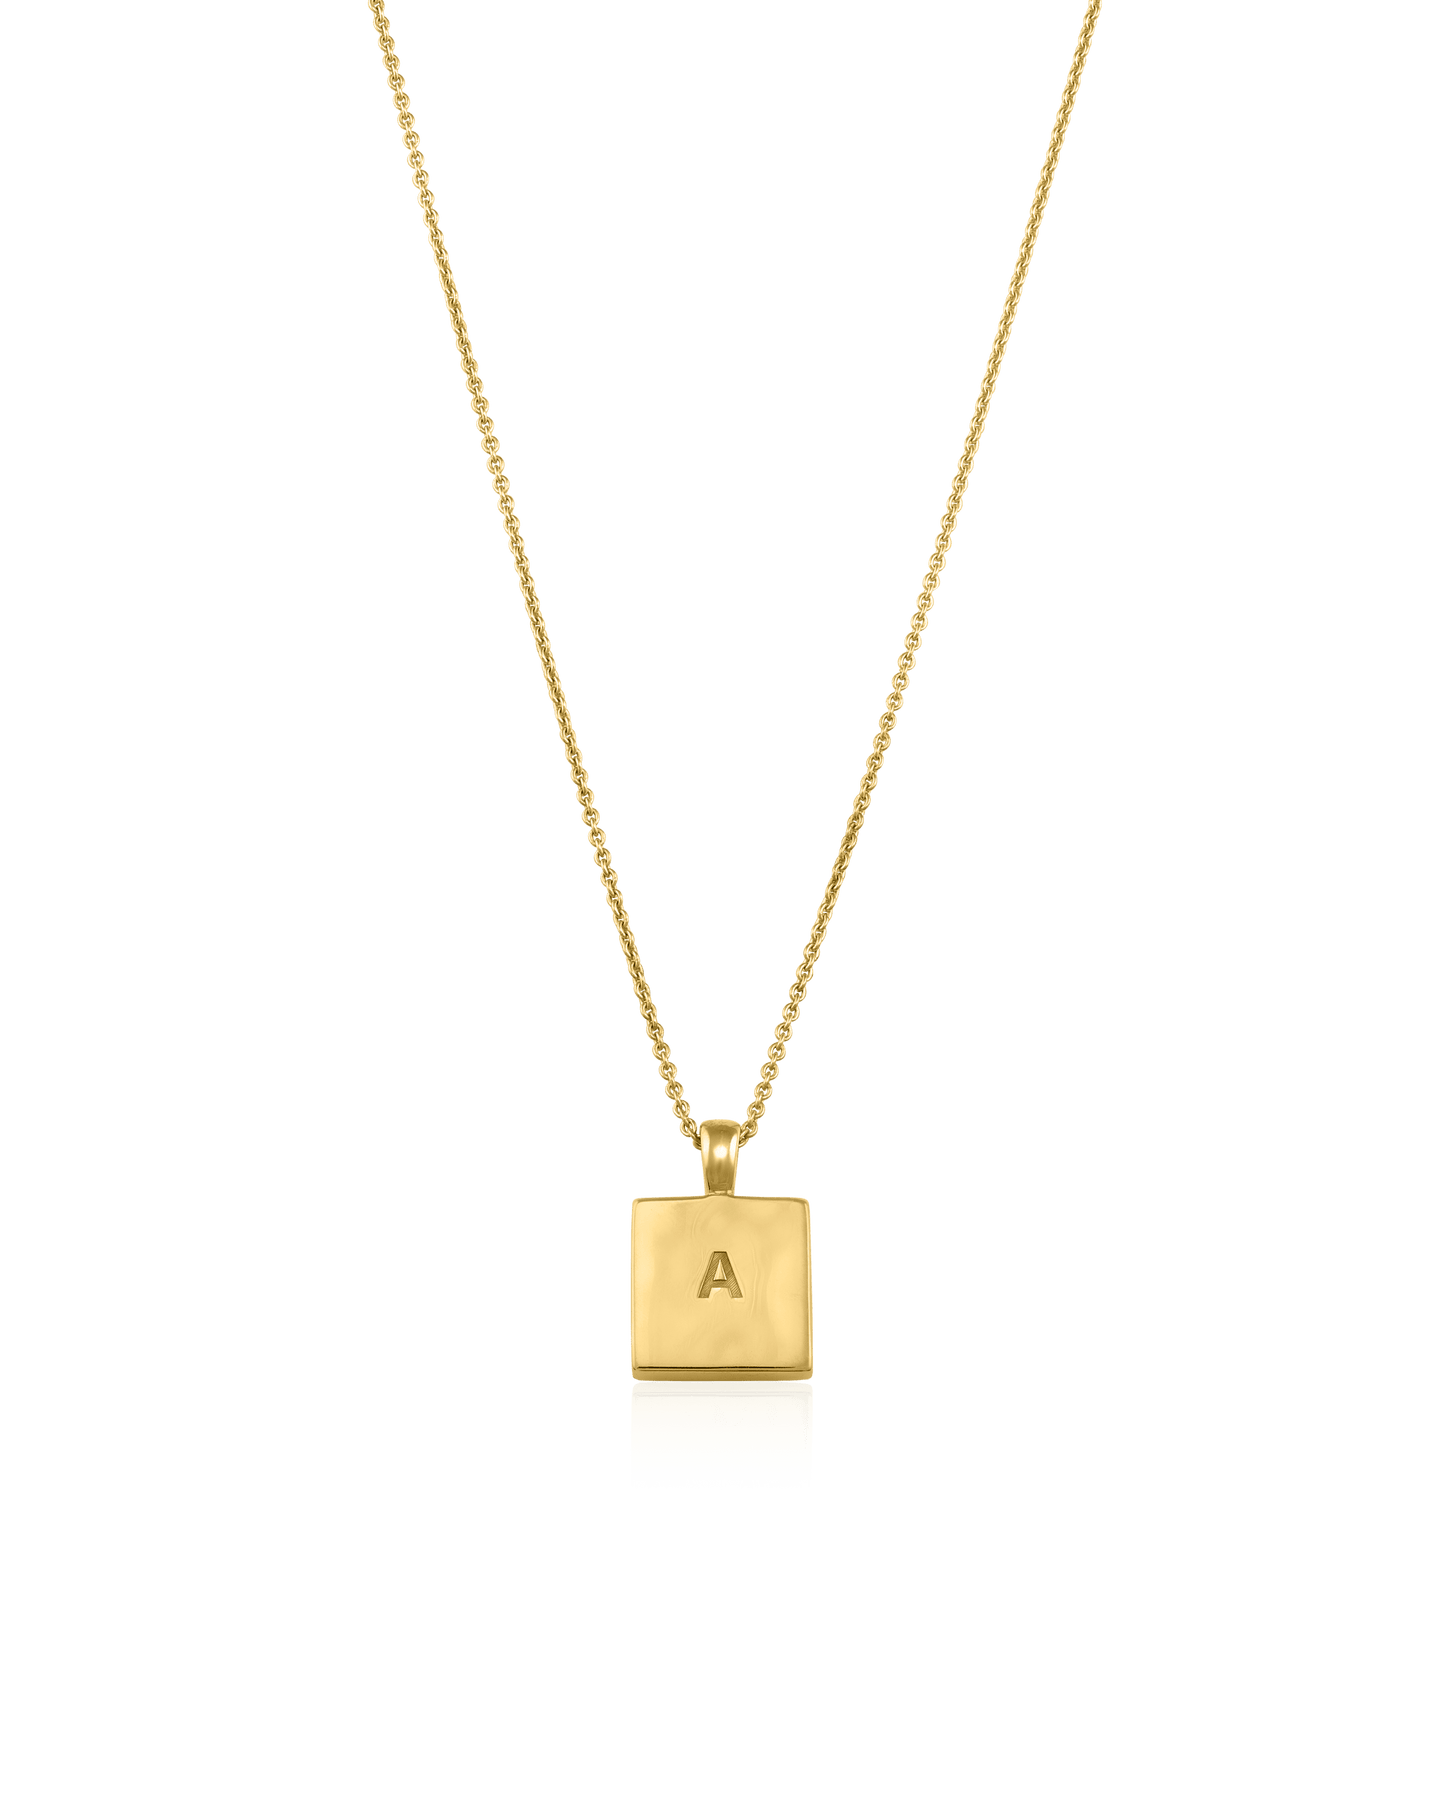 El Dorado Necklace - 18K Gold Vermeil Necklaces magal-dev 